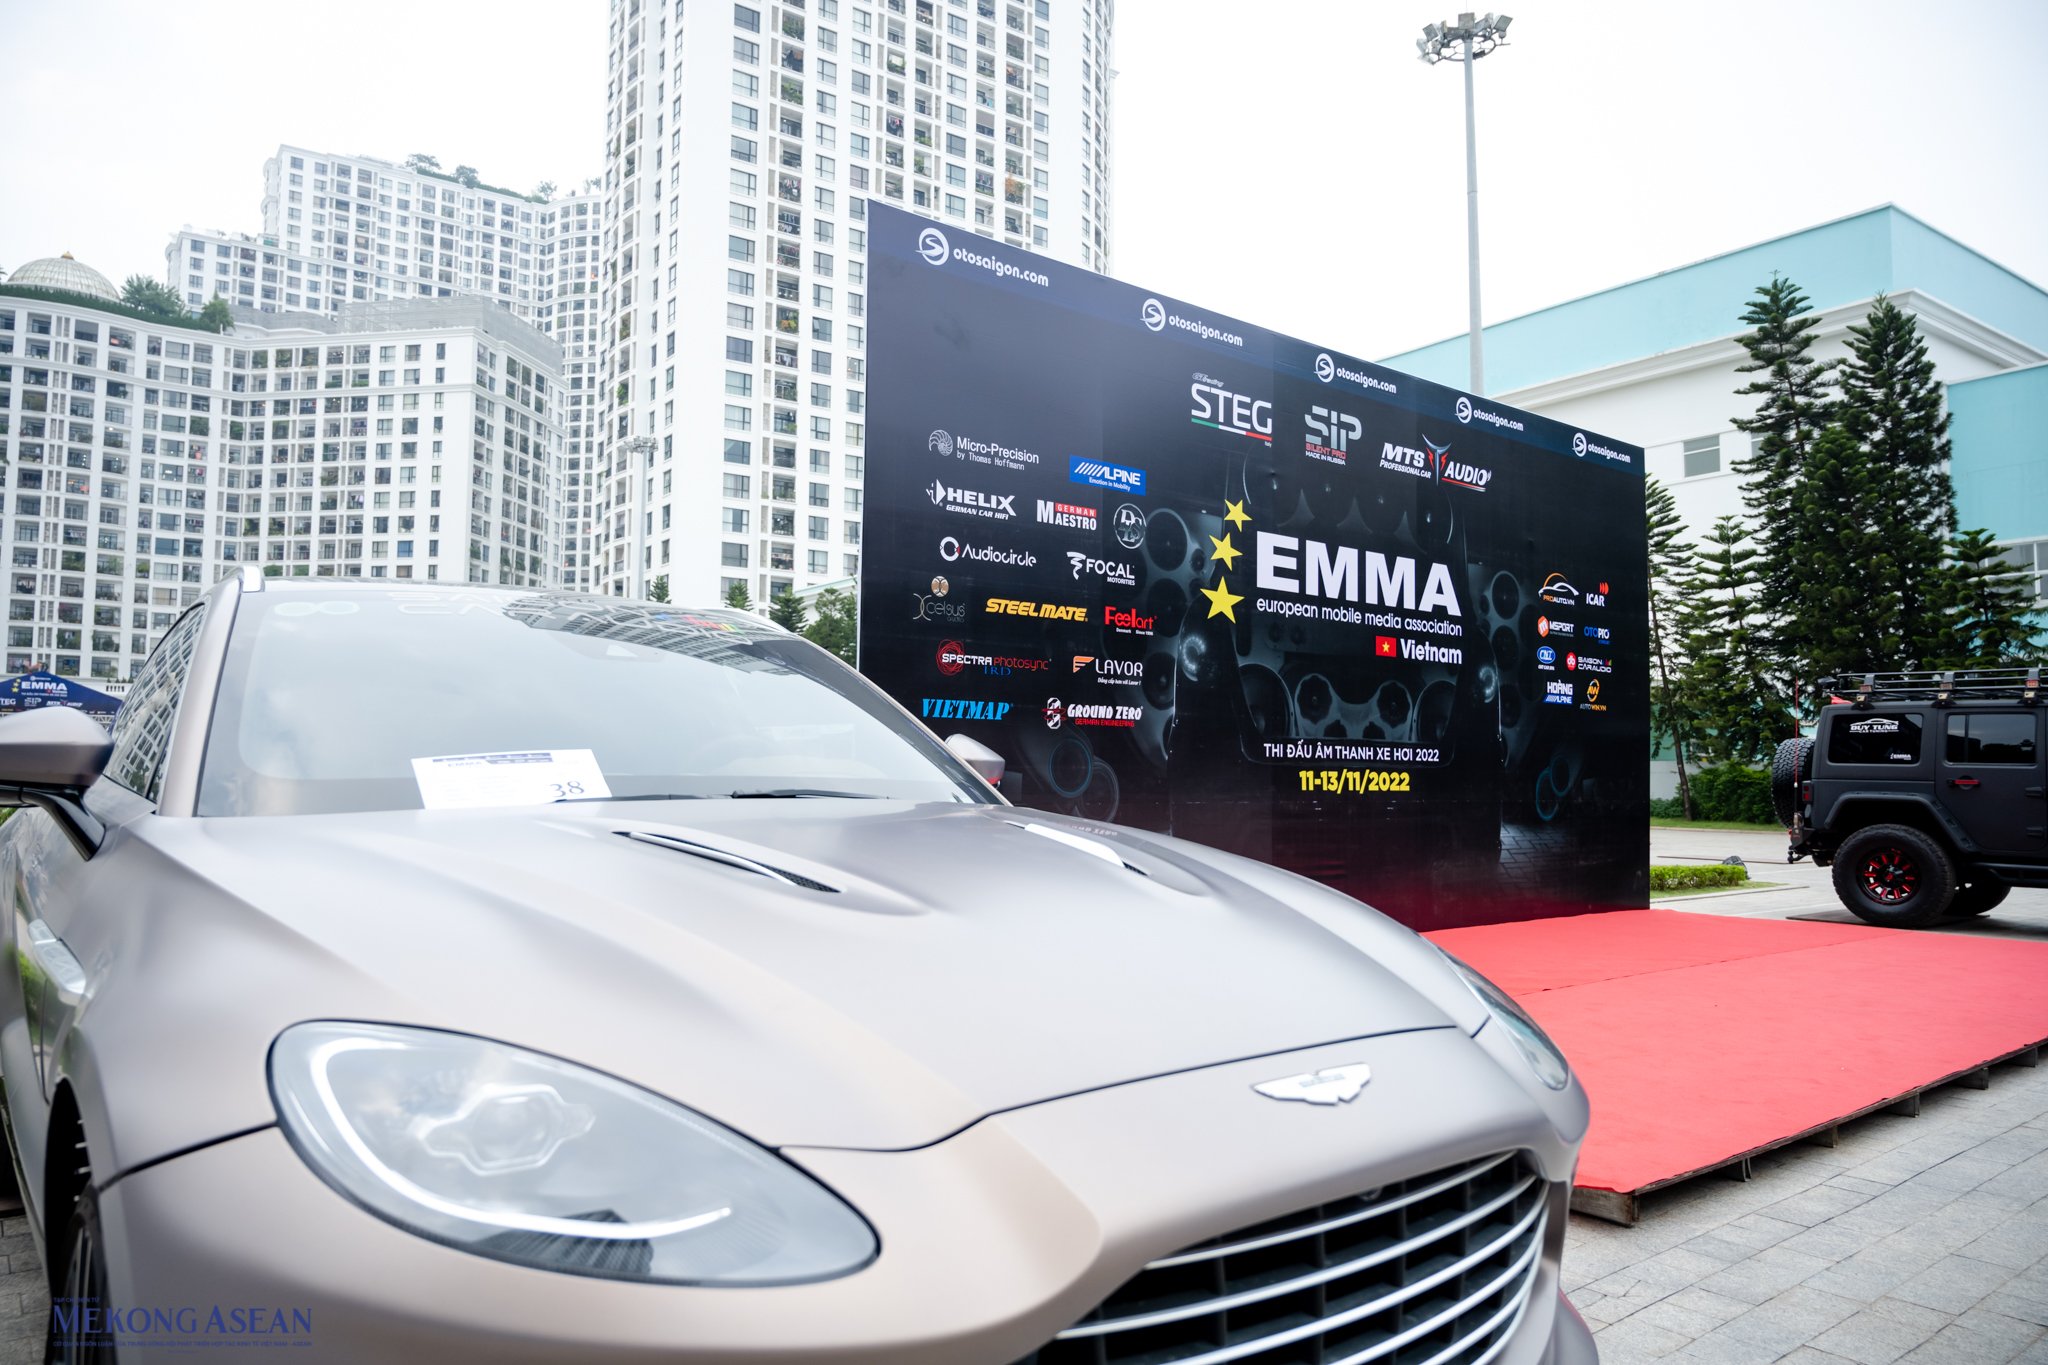 Thi đấu âm thanh xe hơi chuyên nghiệp EMMA lần đầu xuất hiện tại Hà Nội